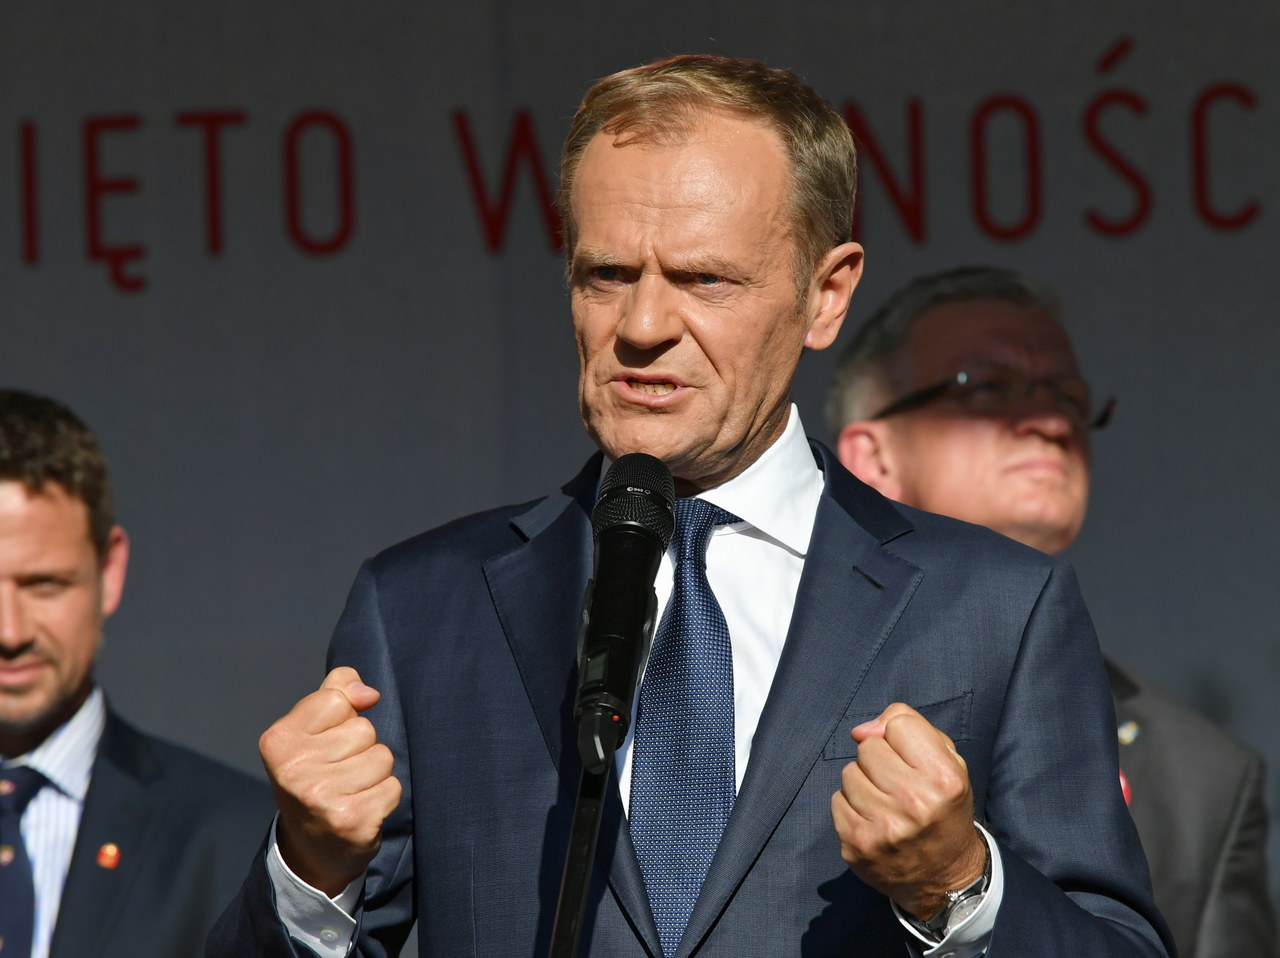 Tusk: Polacy to dumny naród, nawet jeżeli nie zawsze ma szczęście do władzy